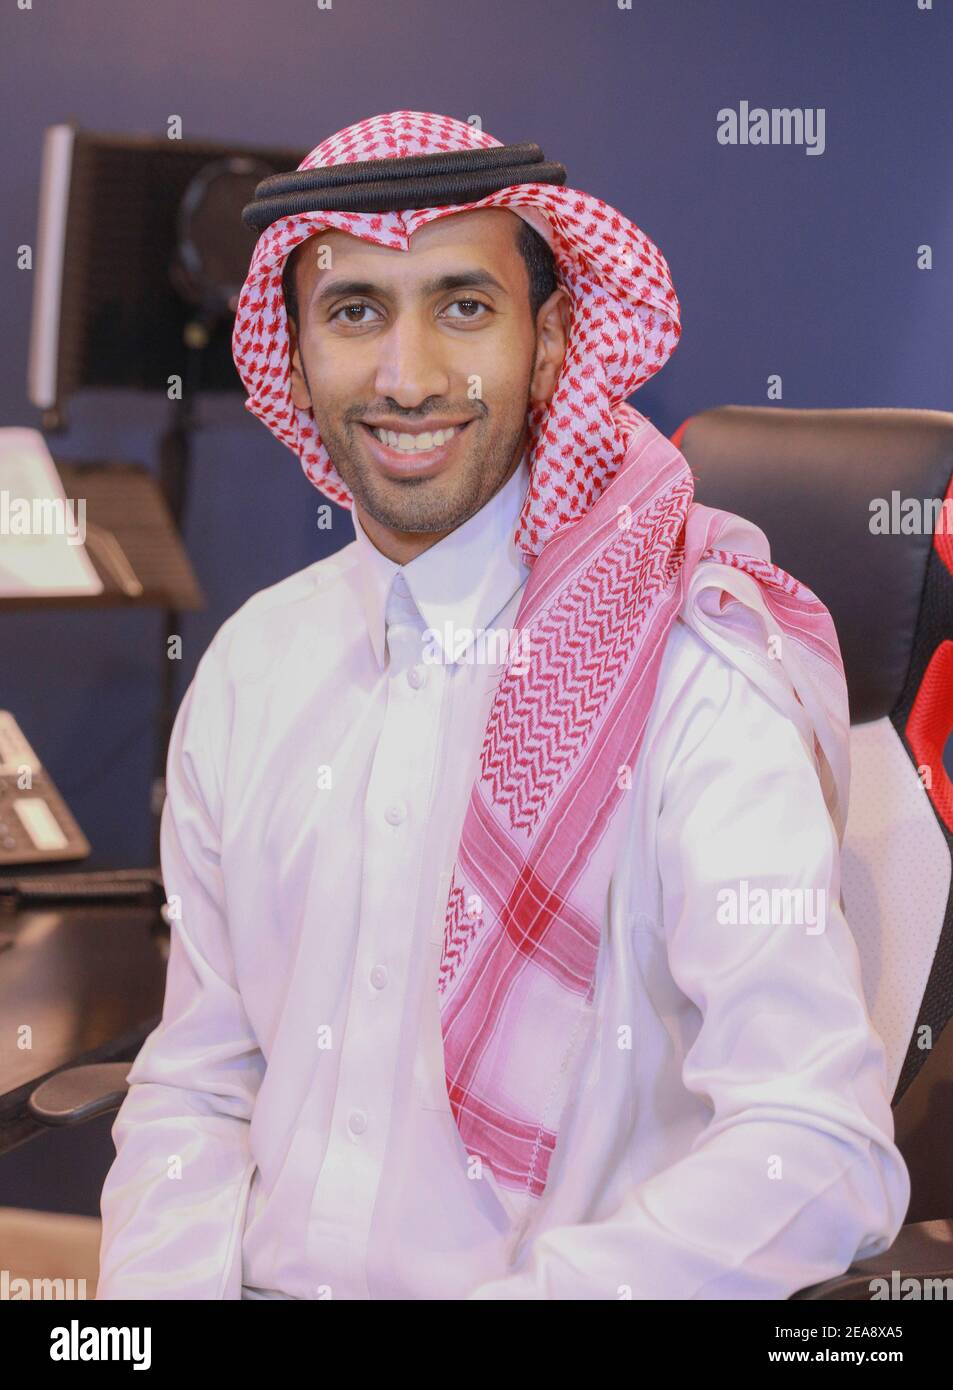 Homme d'affaires saoudien souriant dans un studio, Jeddah Arabie Saoudite  Photo Stock - Alamy